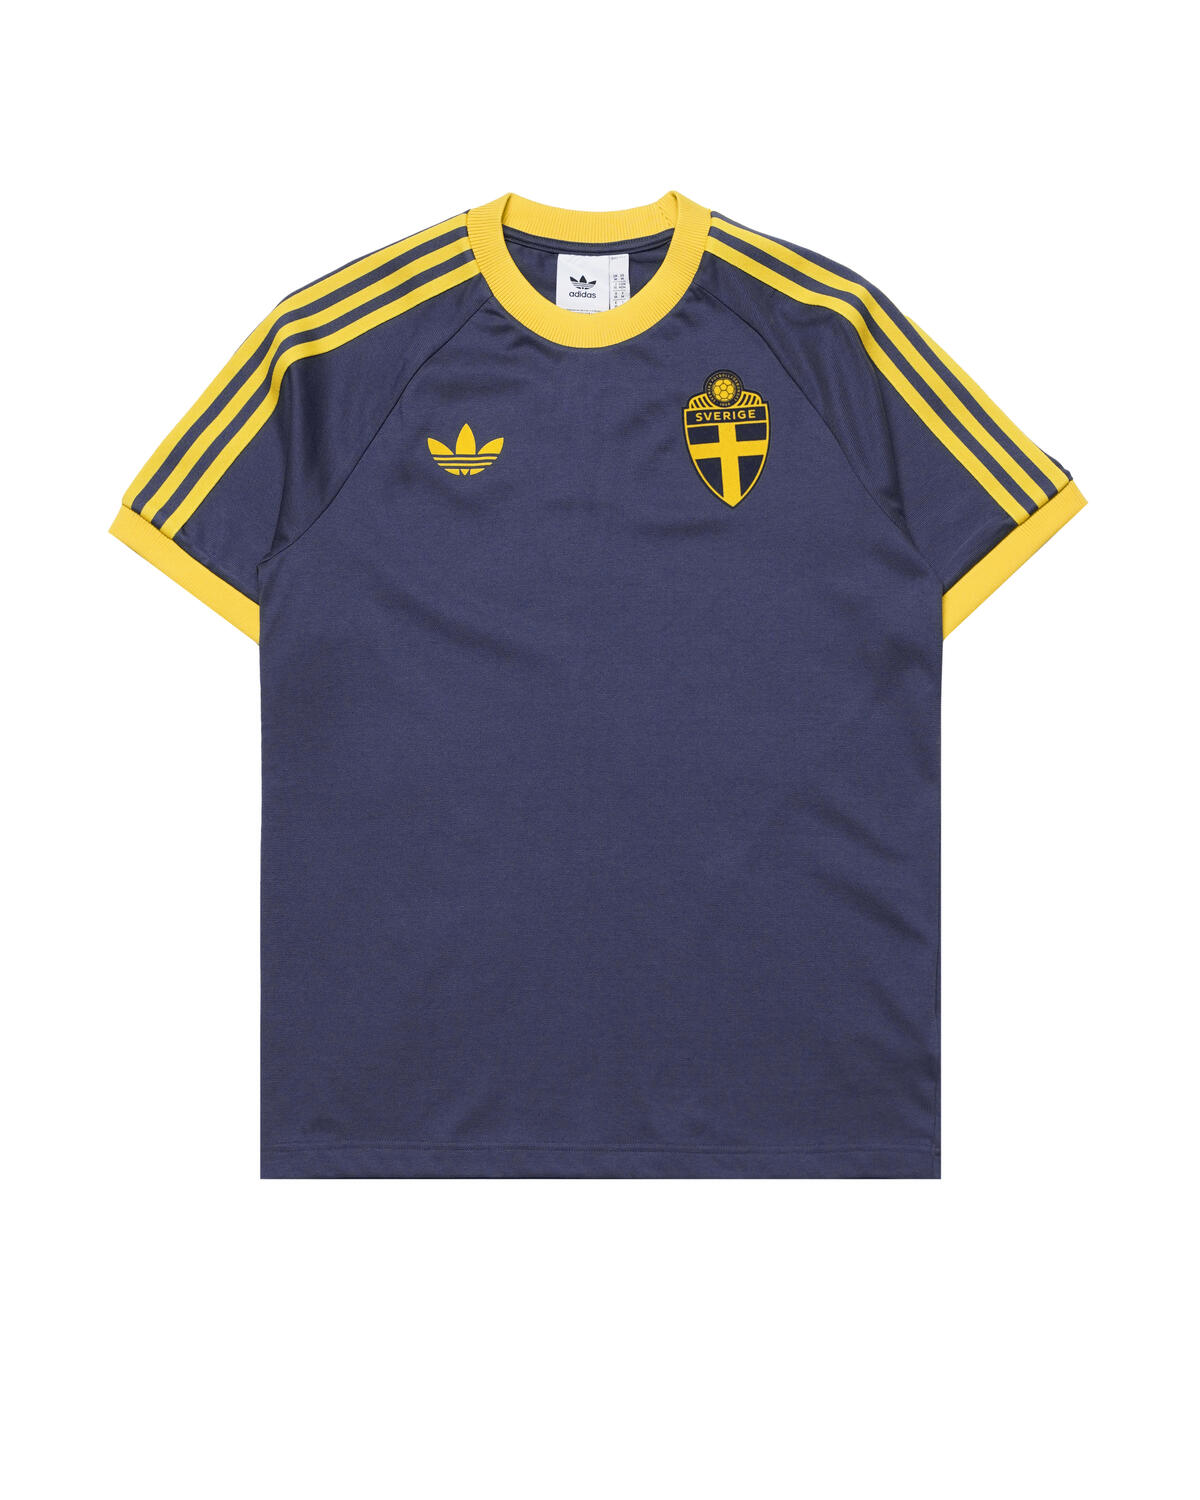 Adidas Originals Sweden SVFF OG 3 Stripes TEE | IT7799 | AFEW STORE